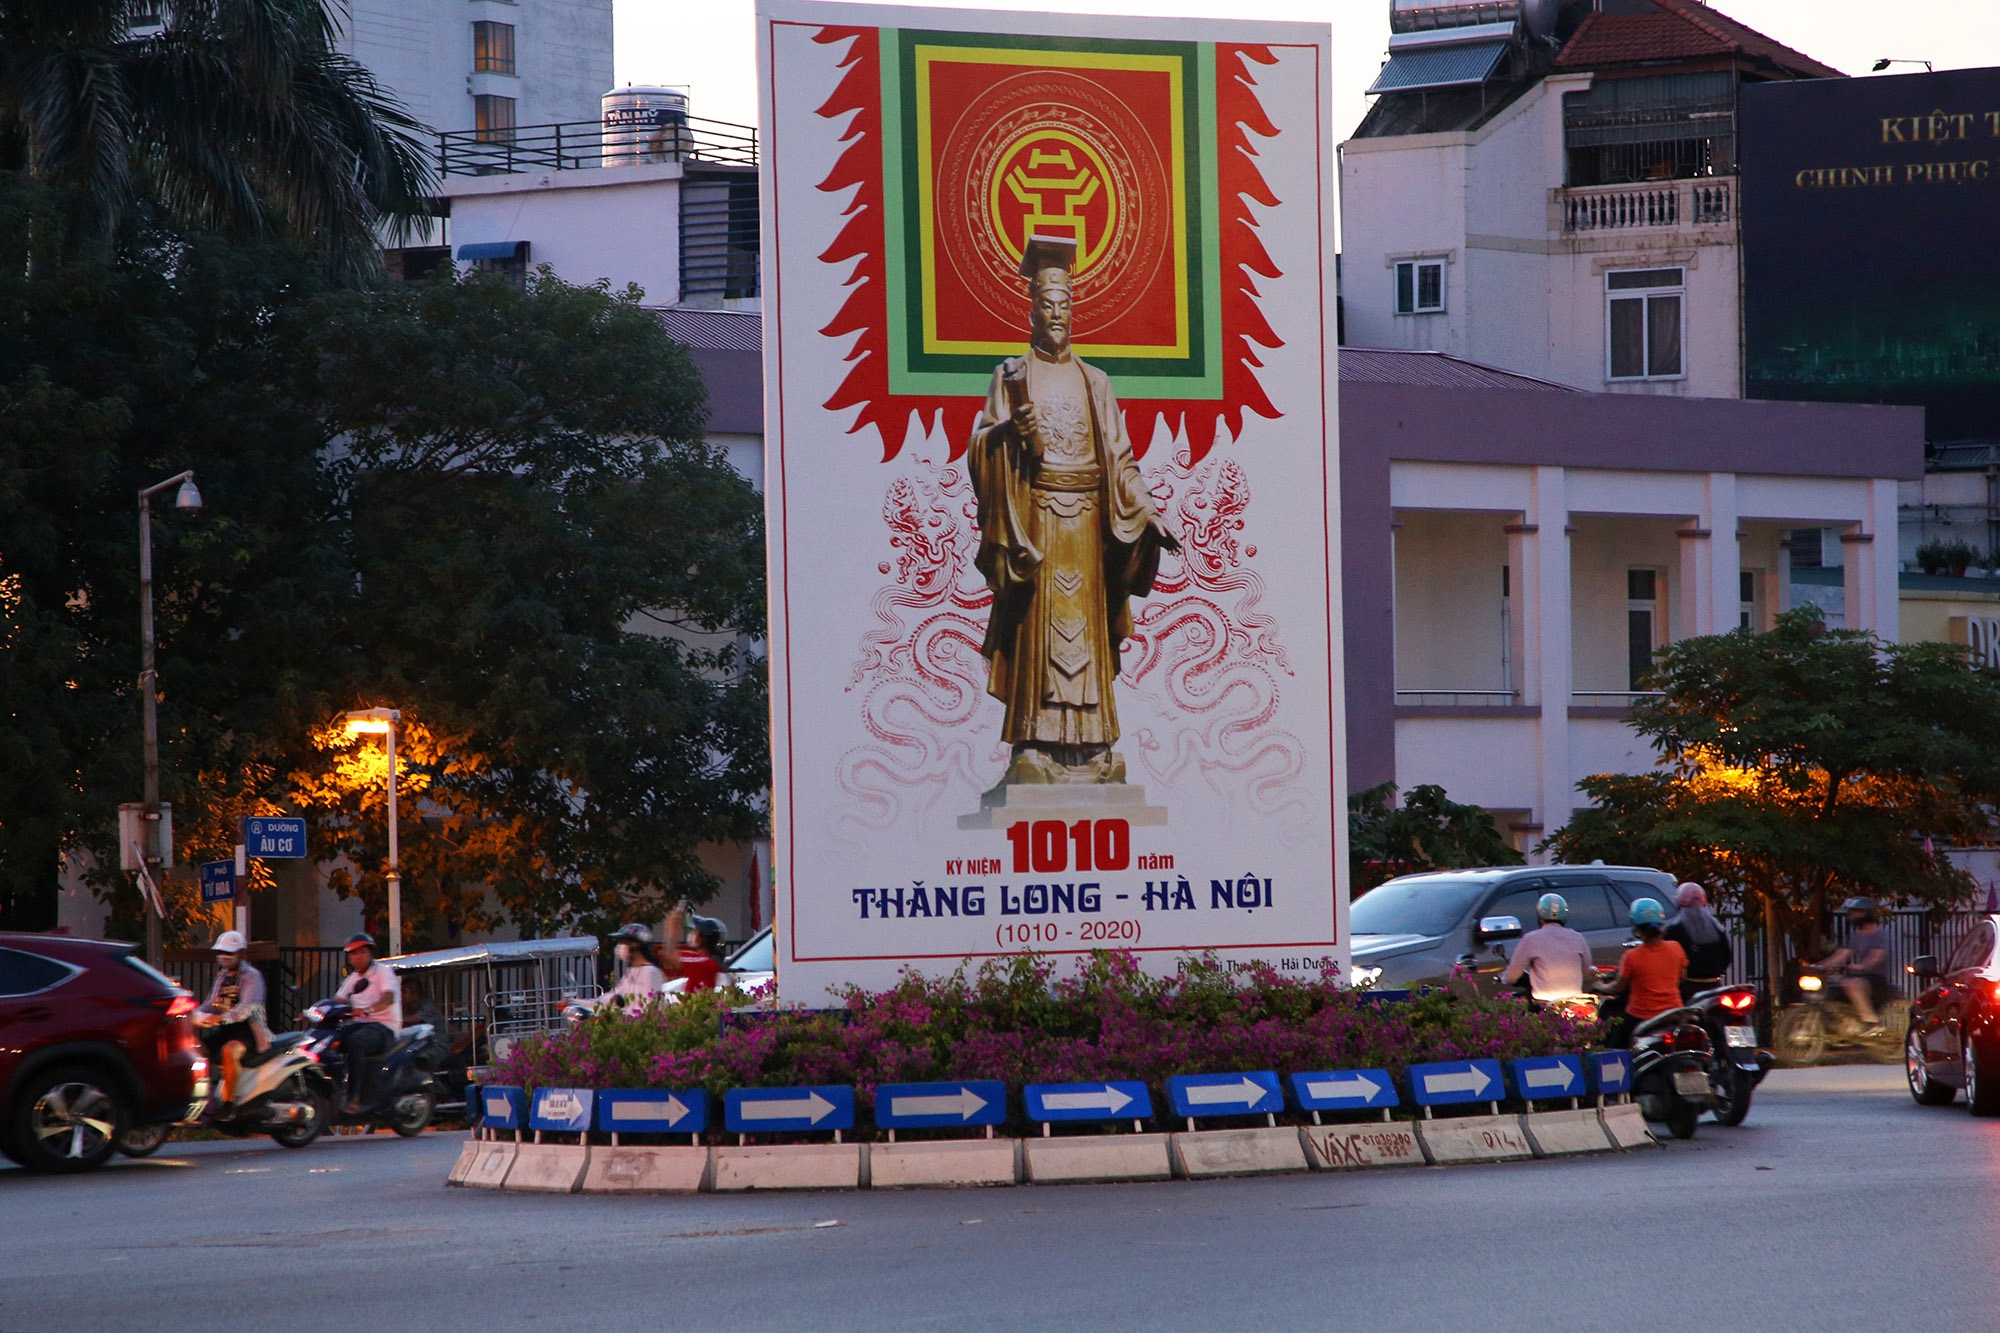 Hà Nội trang trí đường phố kỉ niệm 1010 năm Thăng Long - Hà Nội - 11